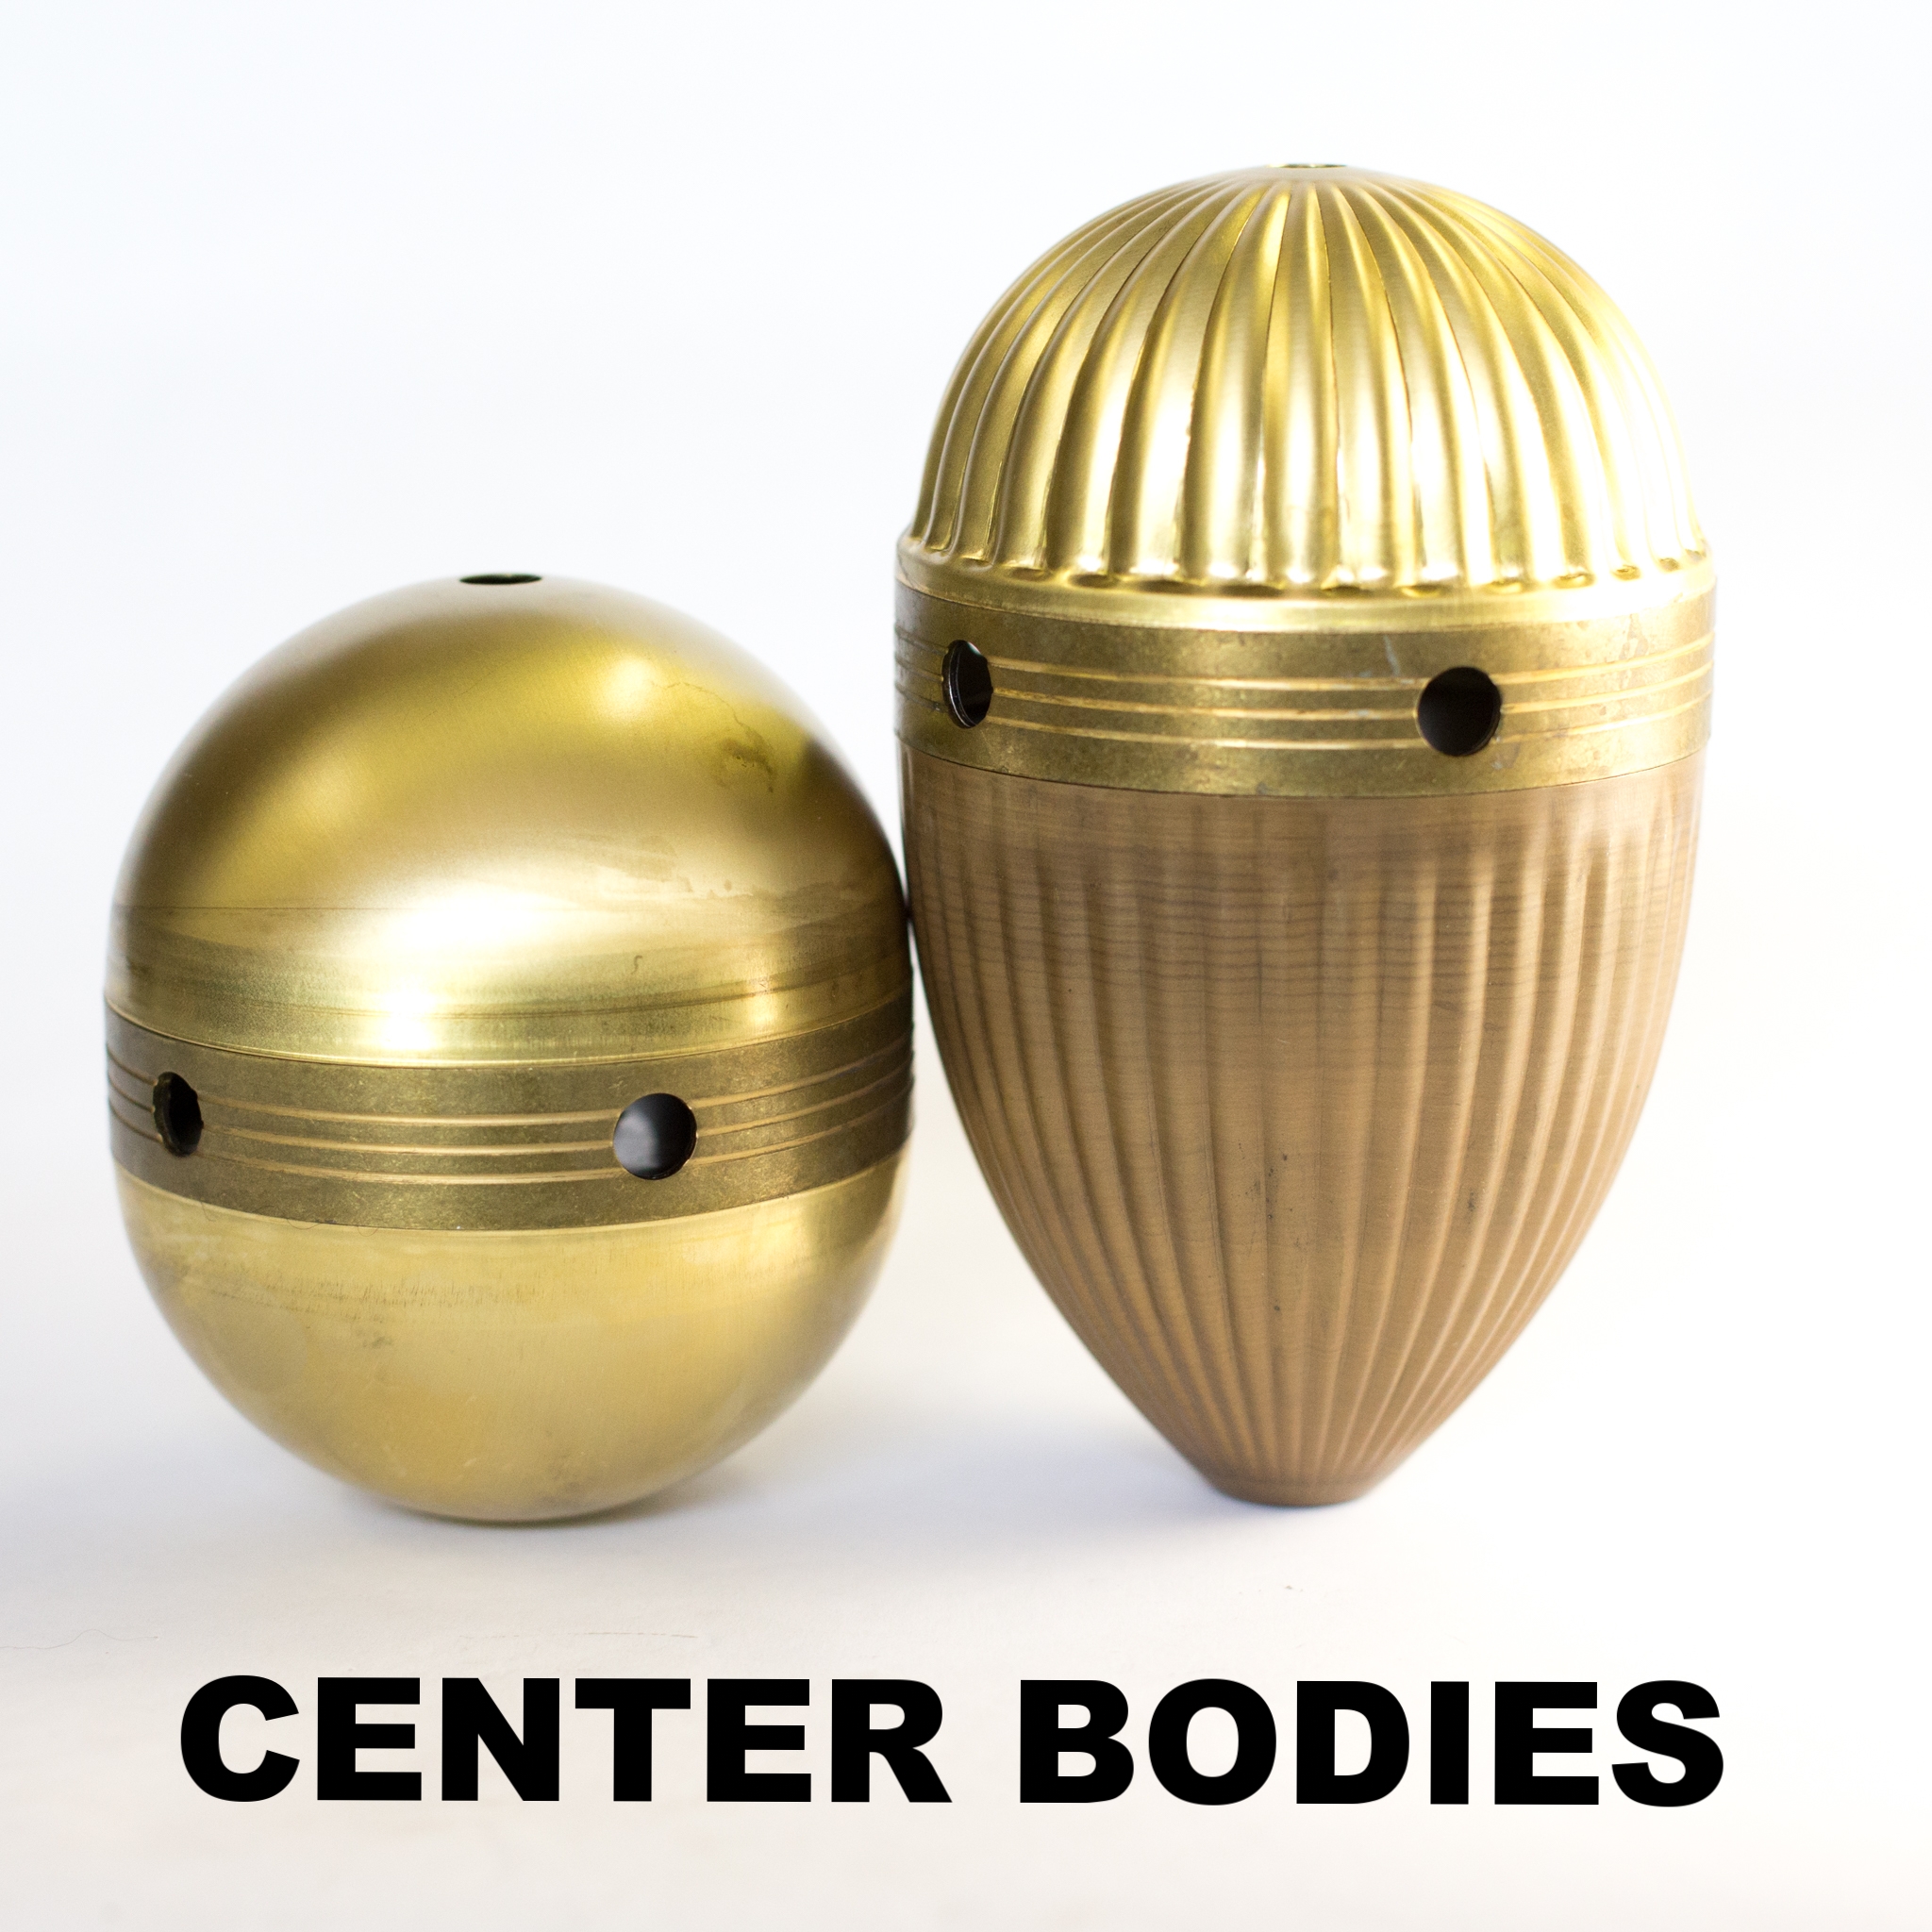 Center Bodies